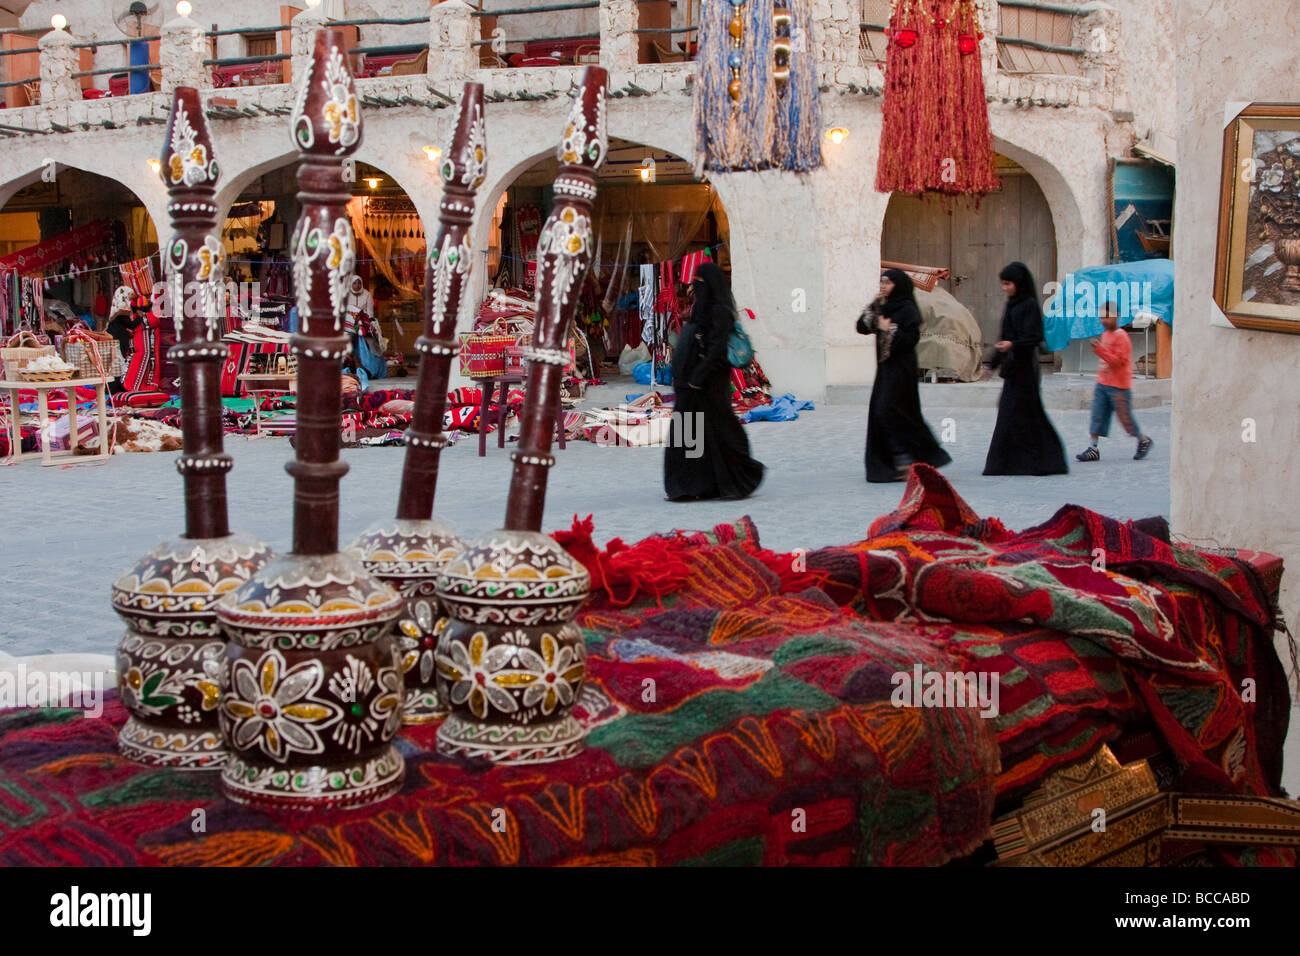 Doha, Katar.  Markt-Szene in den vor kurzem modernisierten traditionellen Markt. Katarischen Frauen in Abayas. Stockfoto